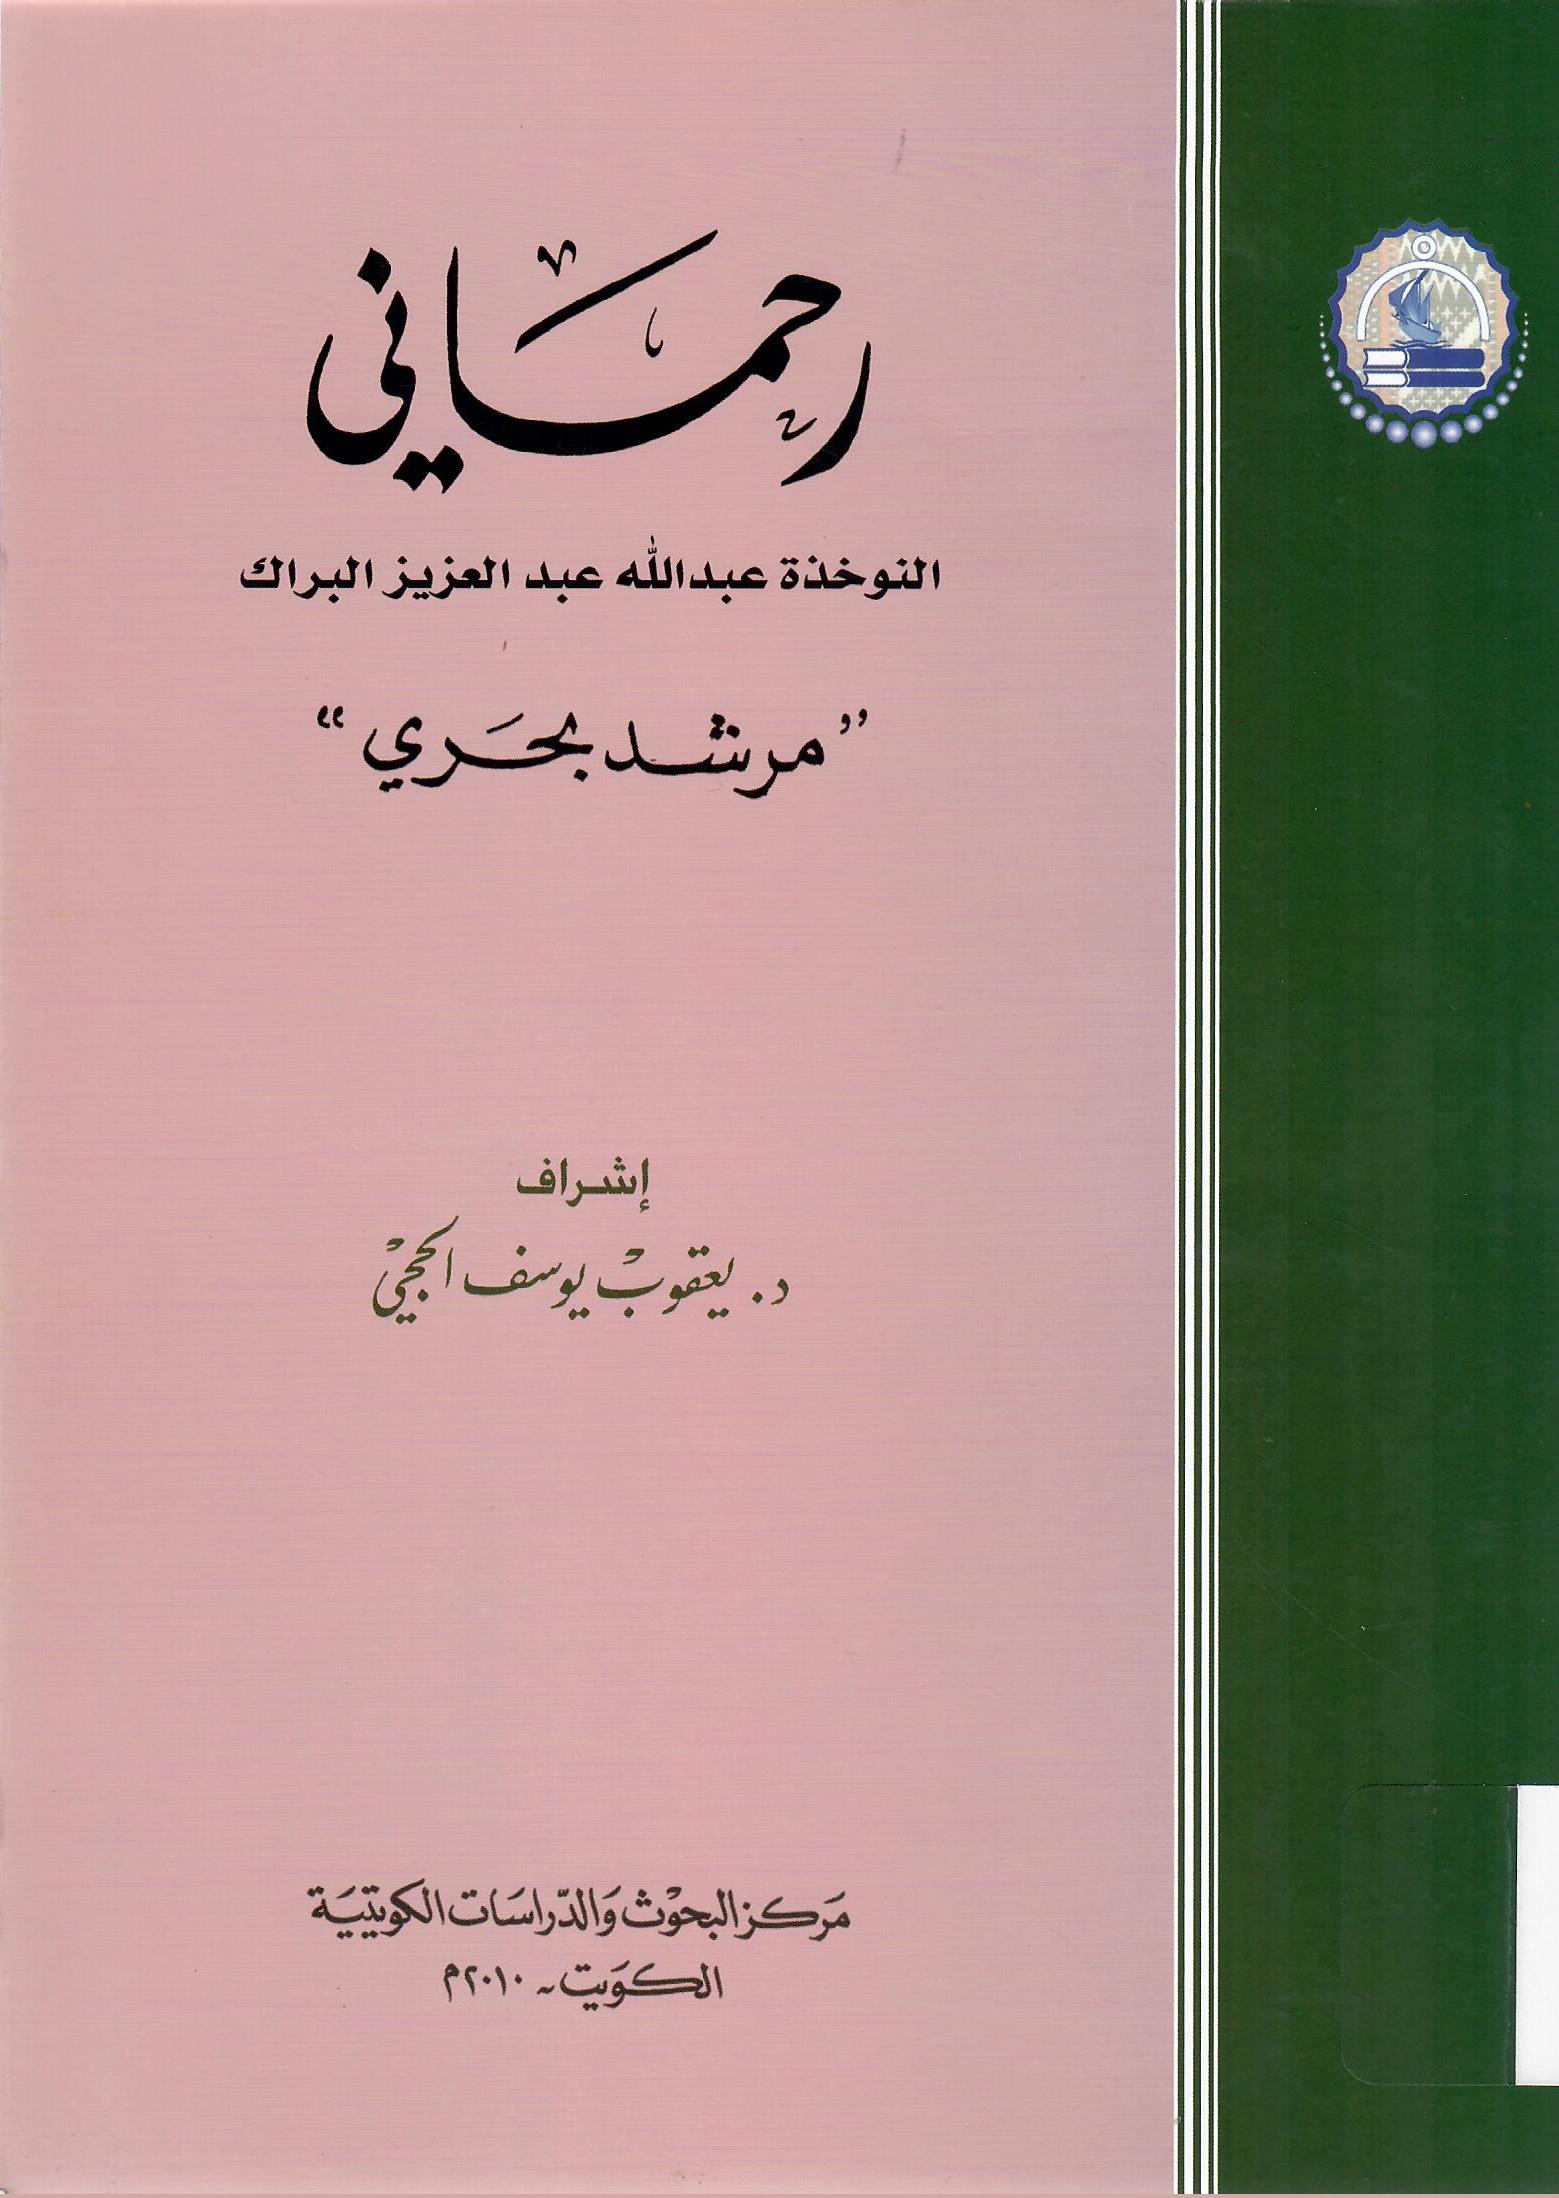 رحماني النوخذة عبدالله عبدالعزيز البراك ( مرشد بحري )